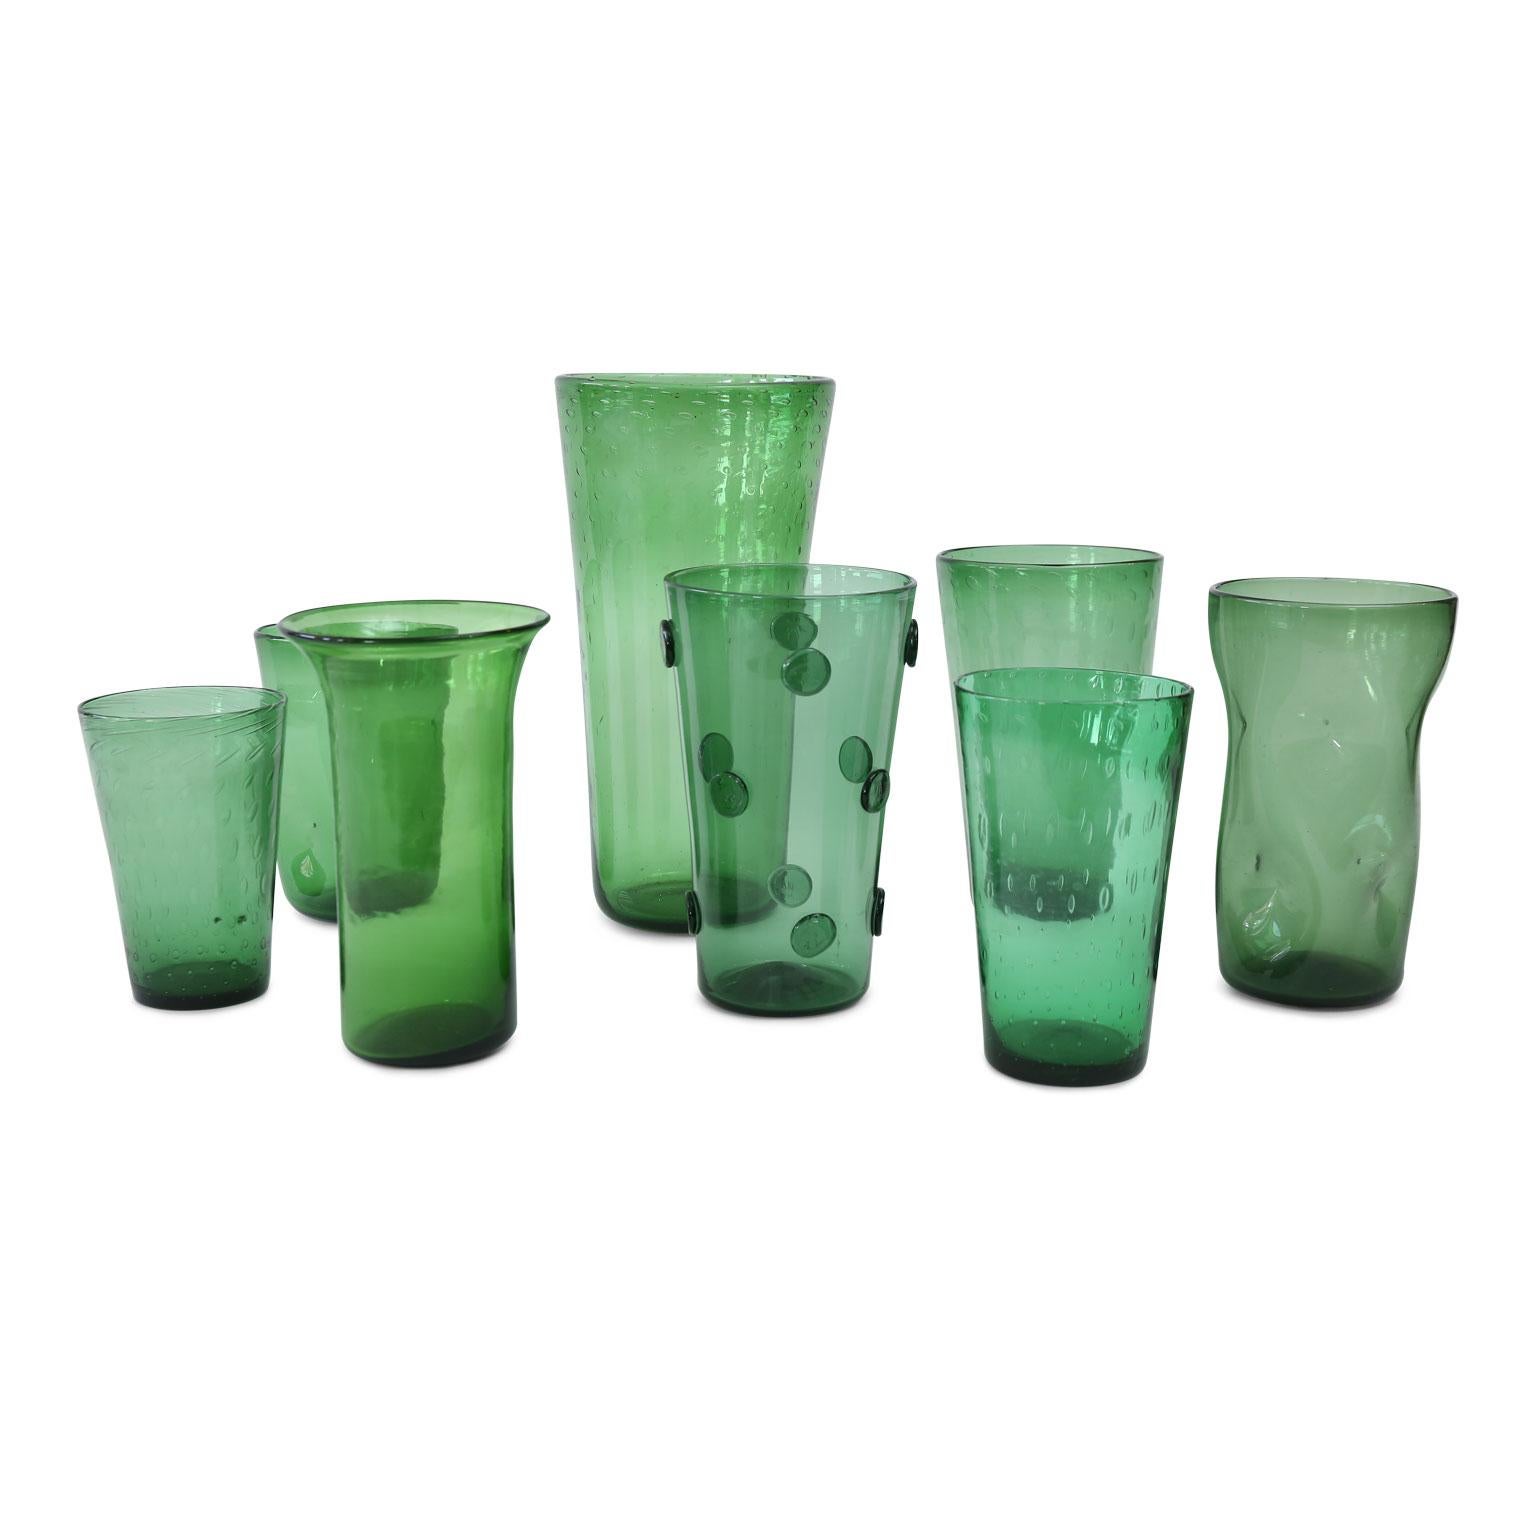 Mid-20th Century Italian Green Glass Vase